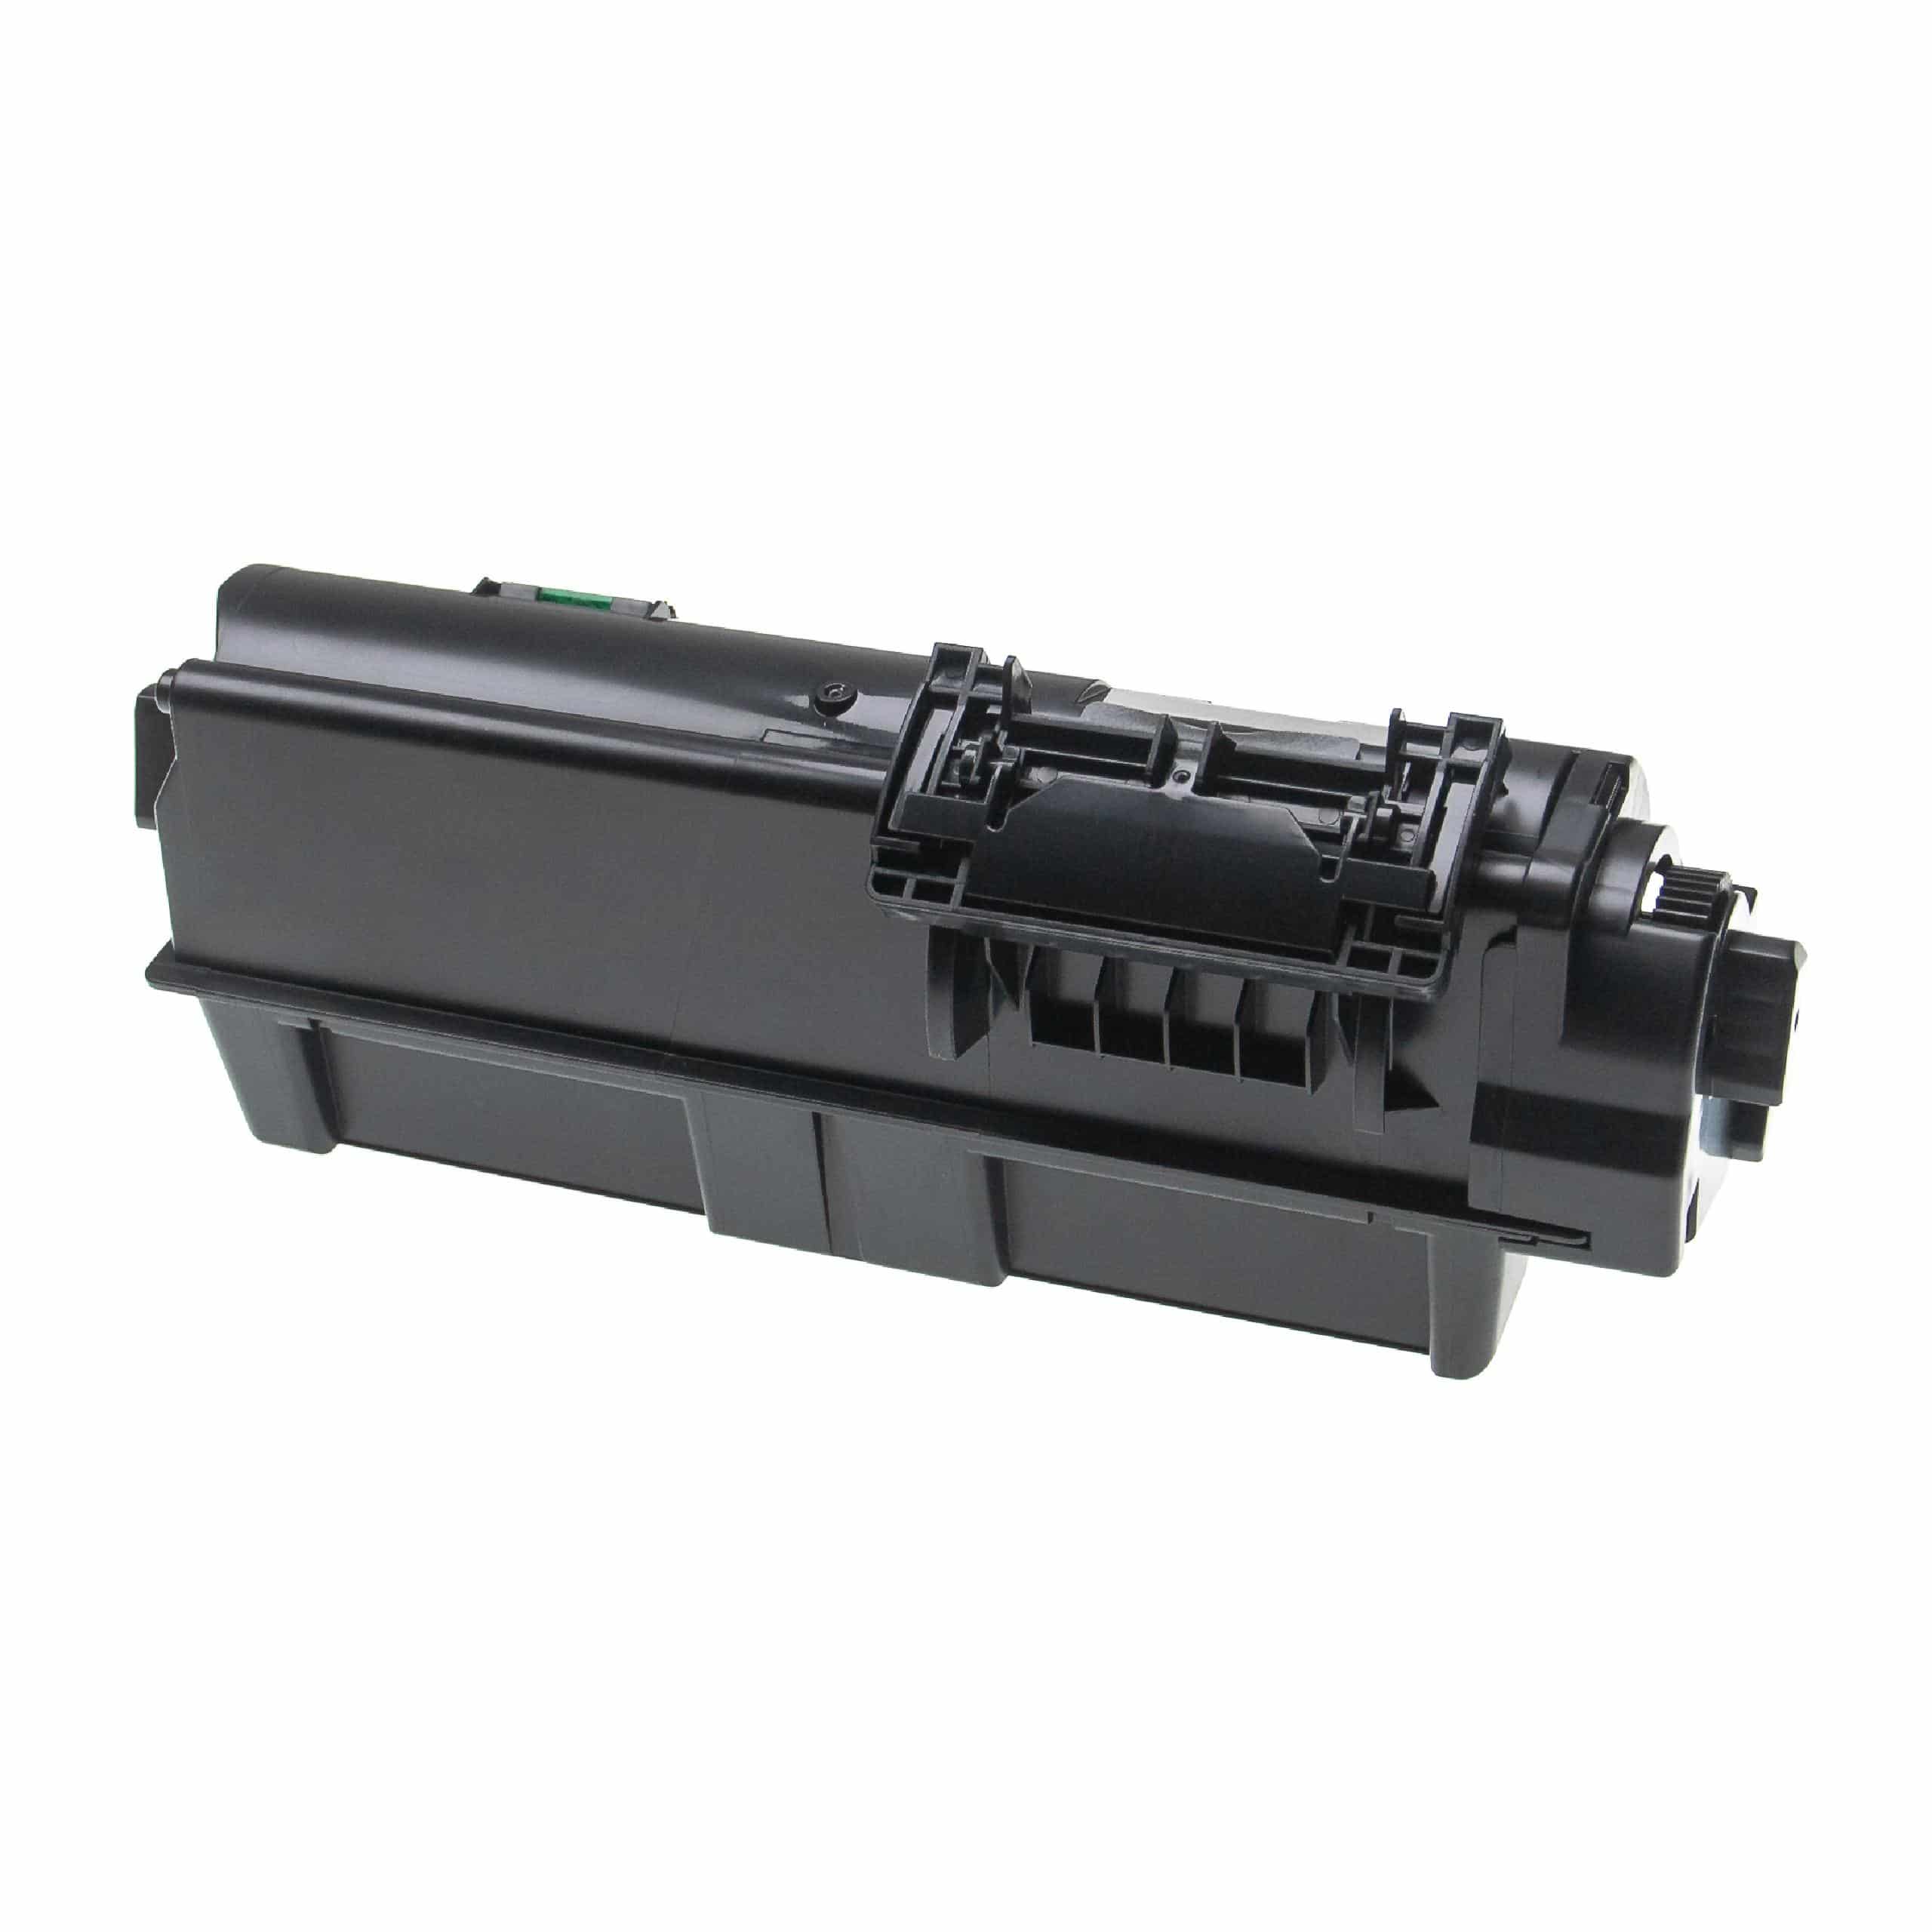 Cartouche de toner remplace Kyocera TK-1160 pour imprimante laser Kyocera, noir